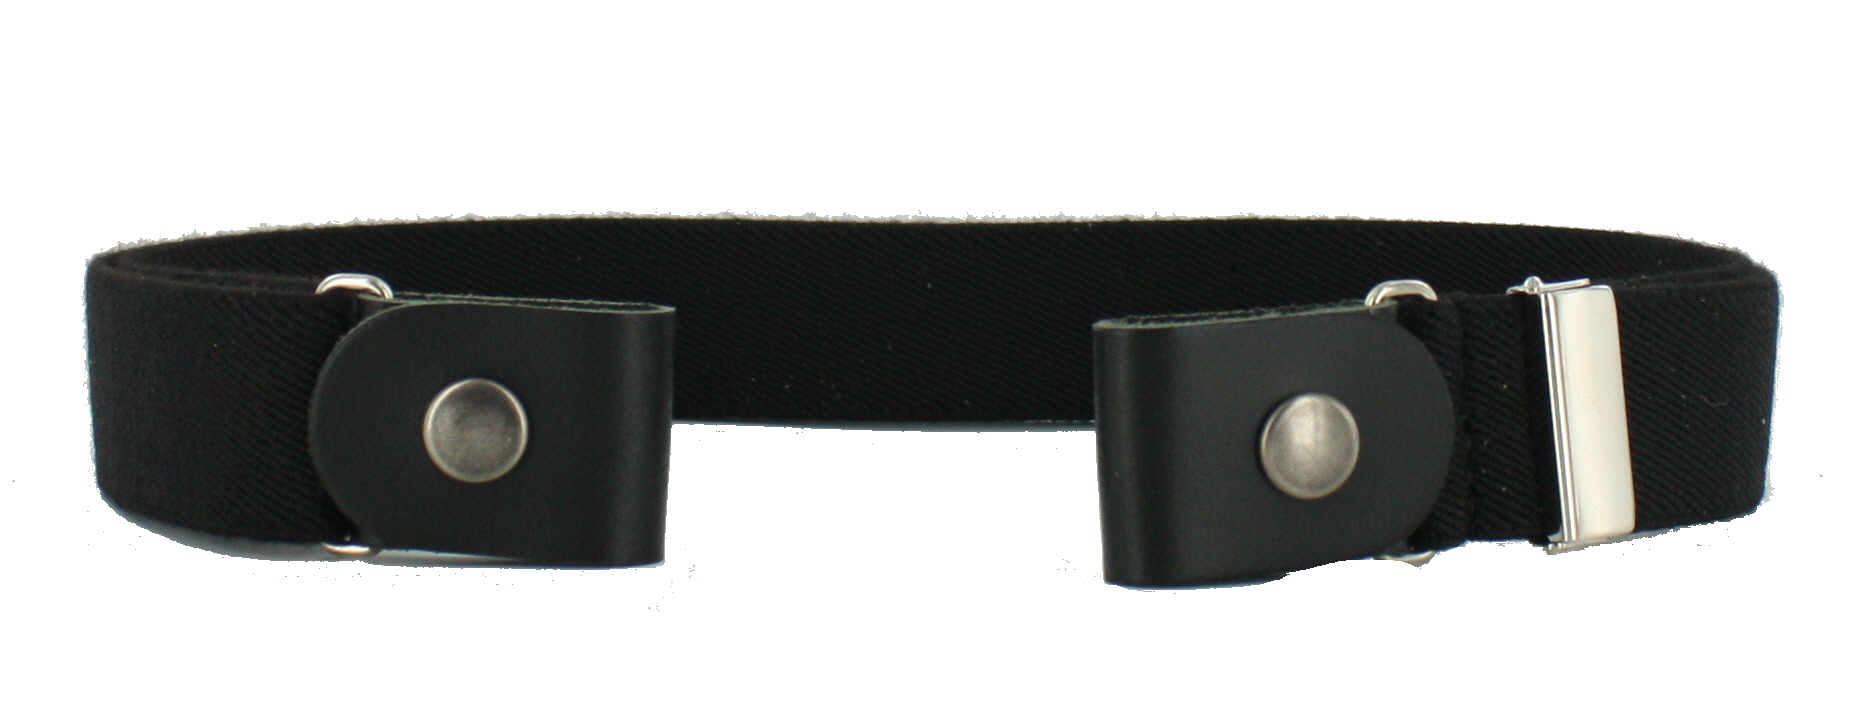 63000 gesploze riem - Leather Belts